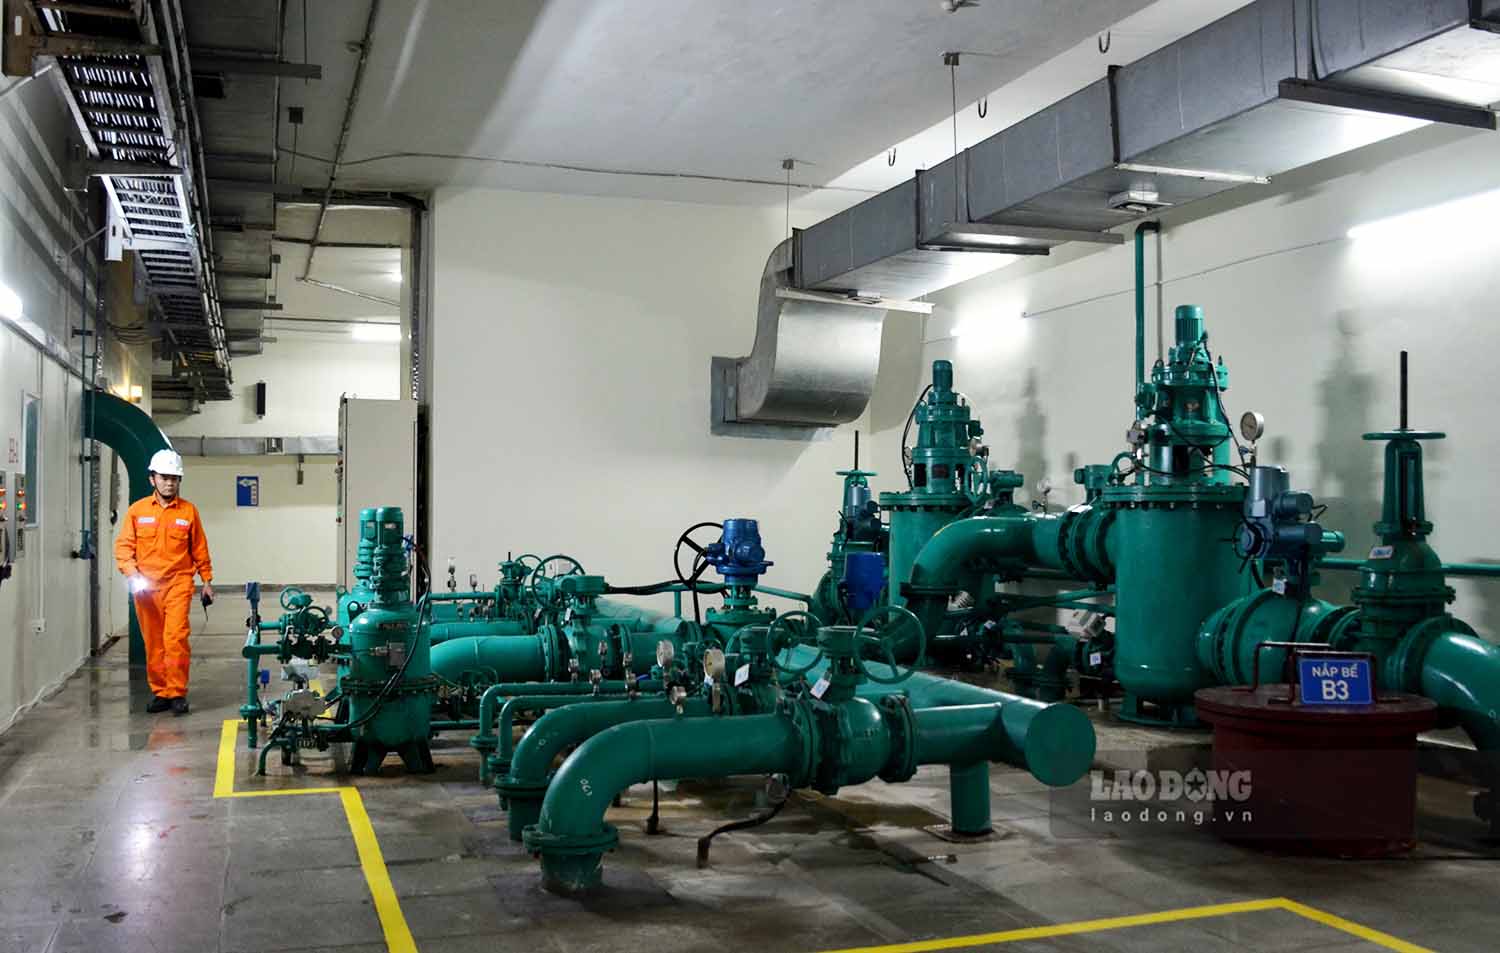 Gần đó là khu vực máy bơm nước để làm mát các tổ máy phát điện. Đây là một trong những thiết bị quan trọng đảm bảo các tổ máy hoạt động ổn định.